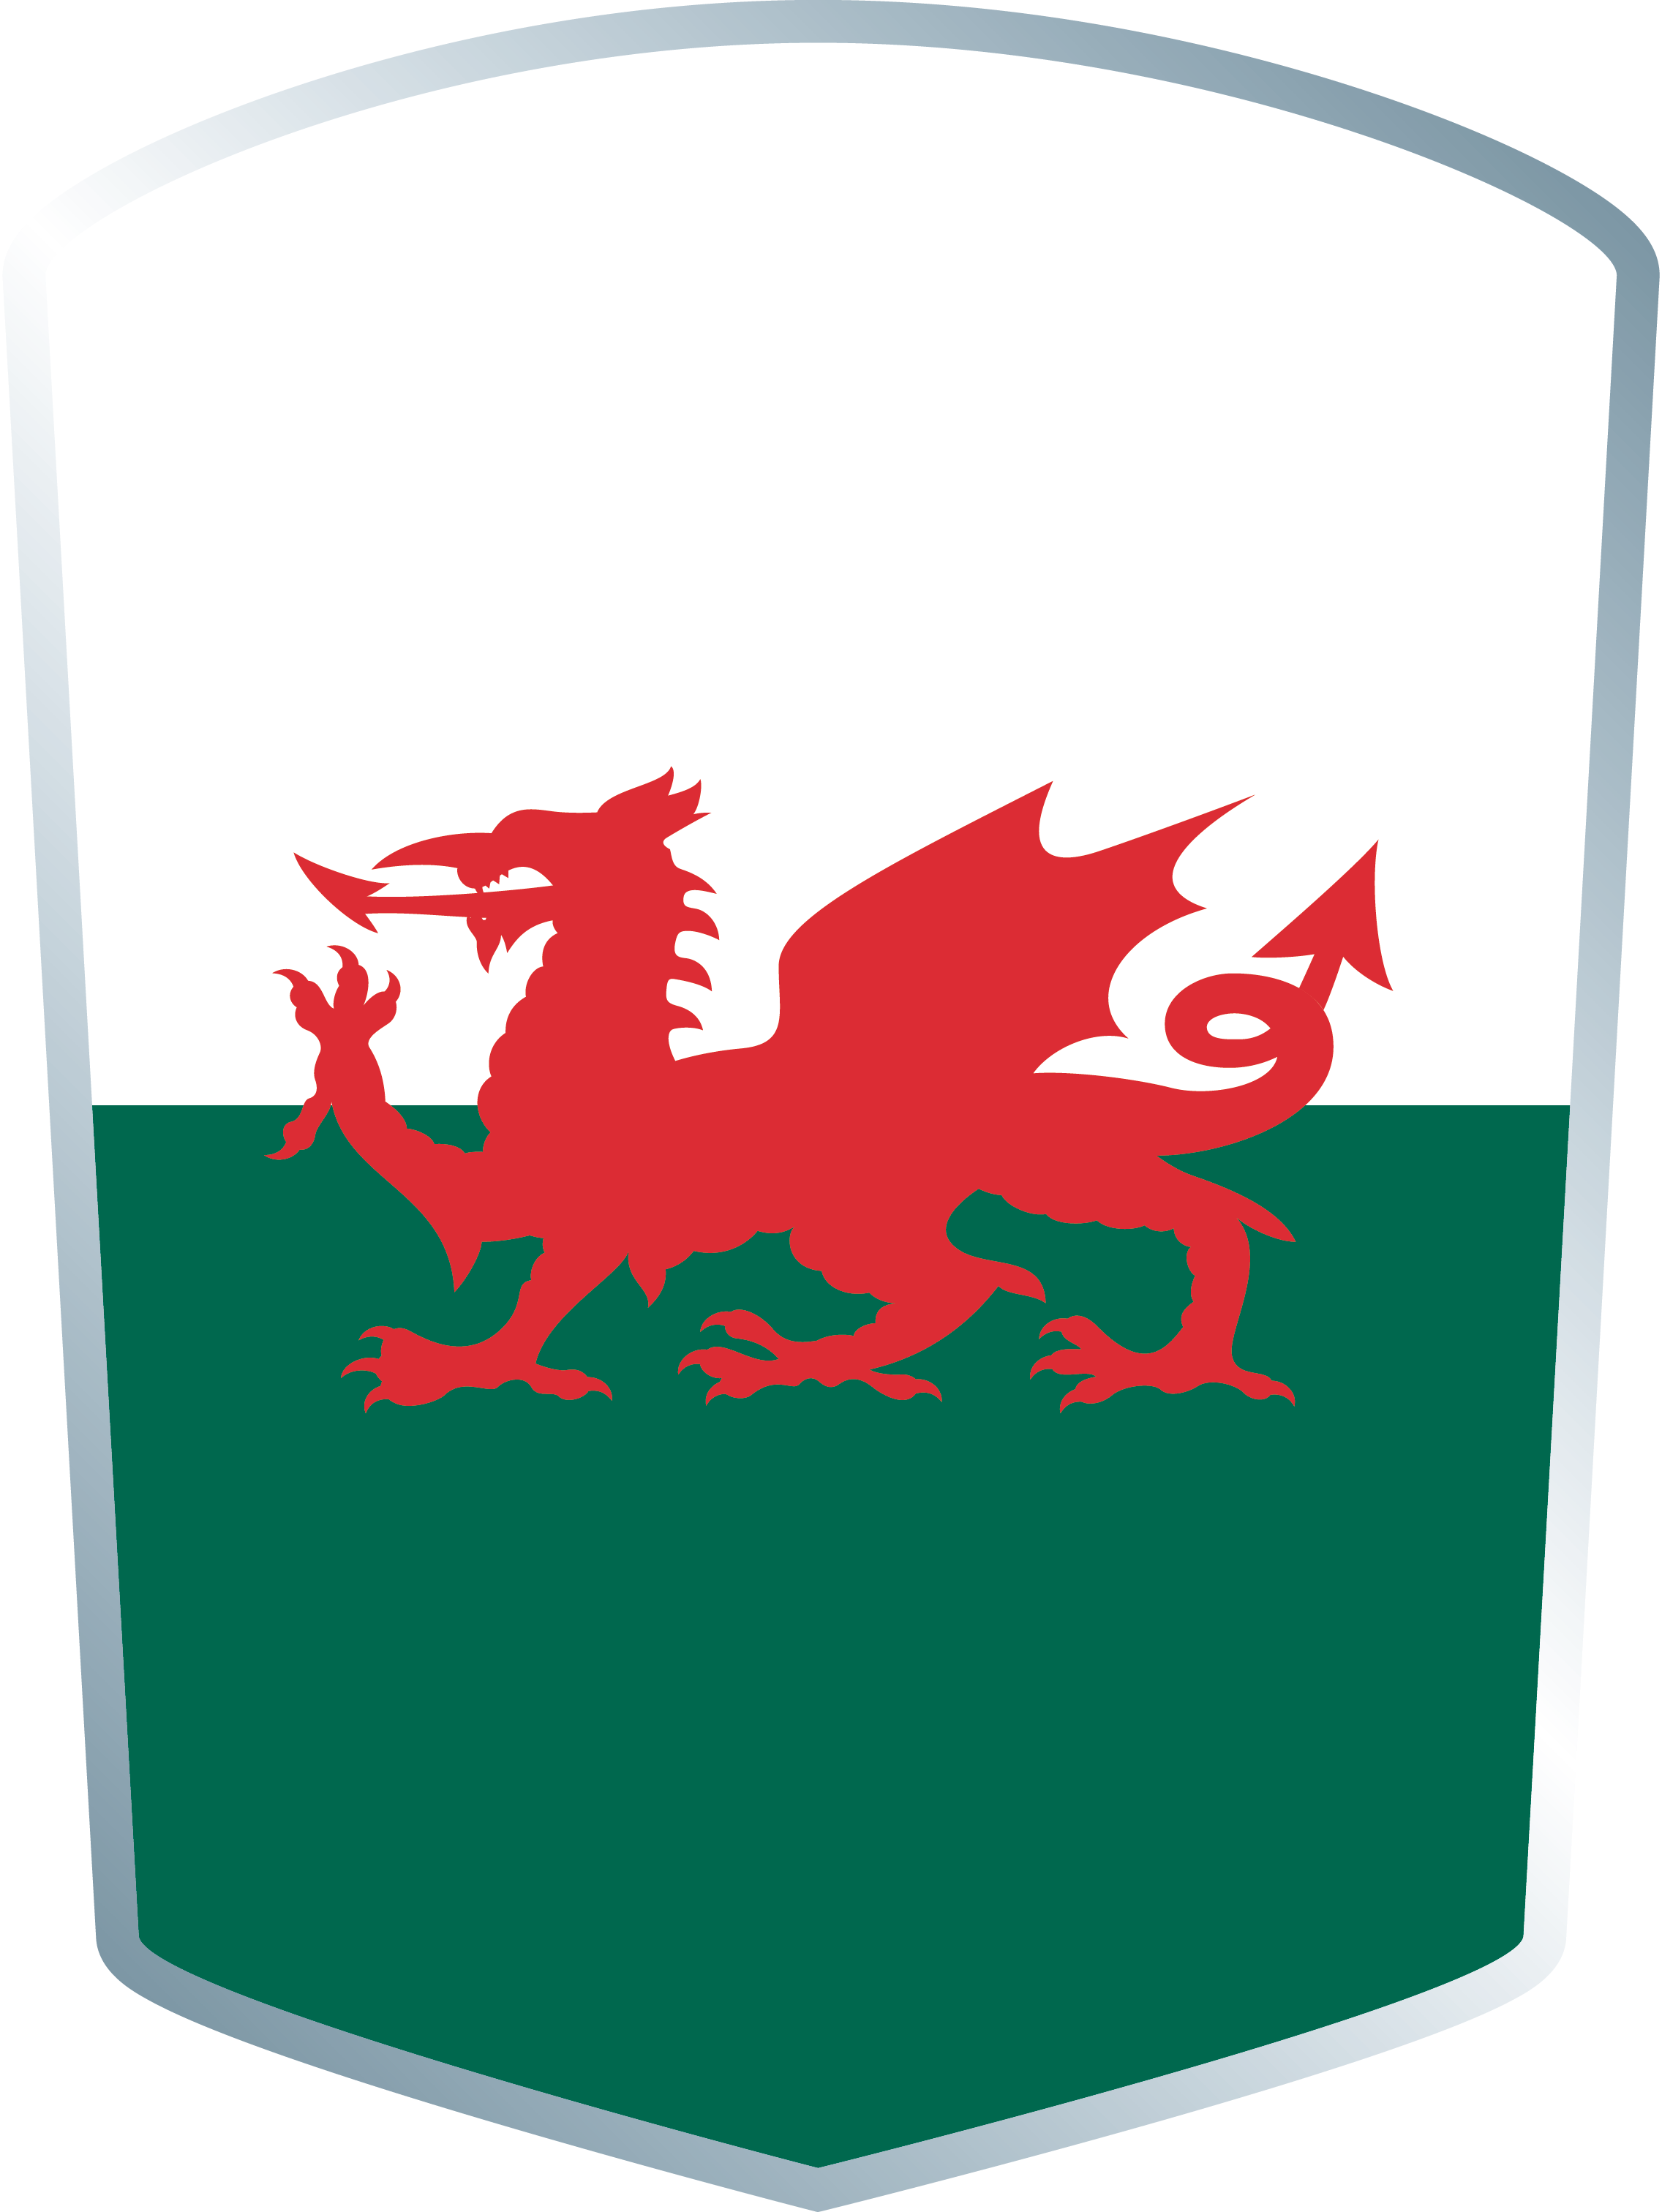 08/07 - Welsh Flag Meme (2272x3024)